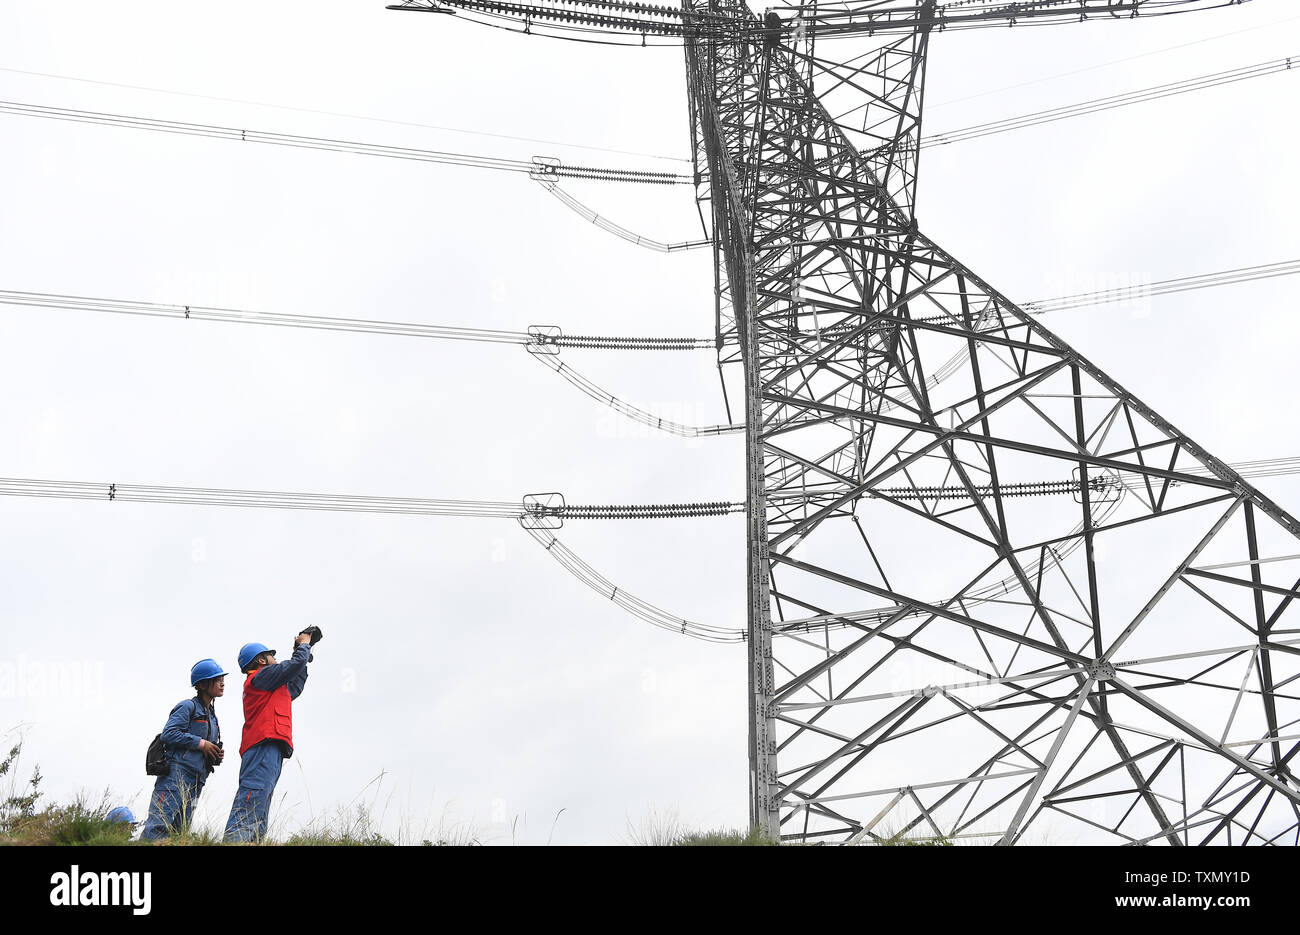 (190625) -- XINING, Giugno 25, 2019 (Xinhua) -- Xining ramo membri dello staff della griglia di Stato di Qinghai potenza elettrica società di manutenzione di lavorare a Xiaoxia Township, Haidong città del nord-ovest della Cina di Provincia di Qinghai, il 19 giugno 2019. Cina nord-occidentale della Provincia di Qinghai completato un 15-giorno tutti energia pulita di alimentazione, prova l'impostazione di un nuovo record dopo il successo di nove giorni di prova lo scorso anno, la griglia di Stato Qinghai società elettrica ha annunciato lunedì. Quasi 6 milioni di persone nella provincia, che confina con la regione autonoma del Tibet, utilizzato solo l'elettricità generata dall'eolico, solare e idraulico Foto Stock